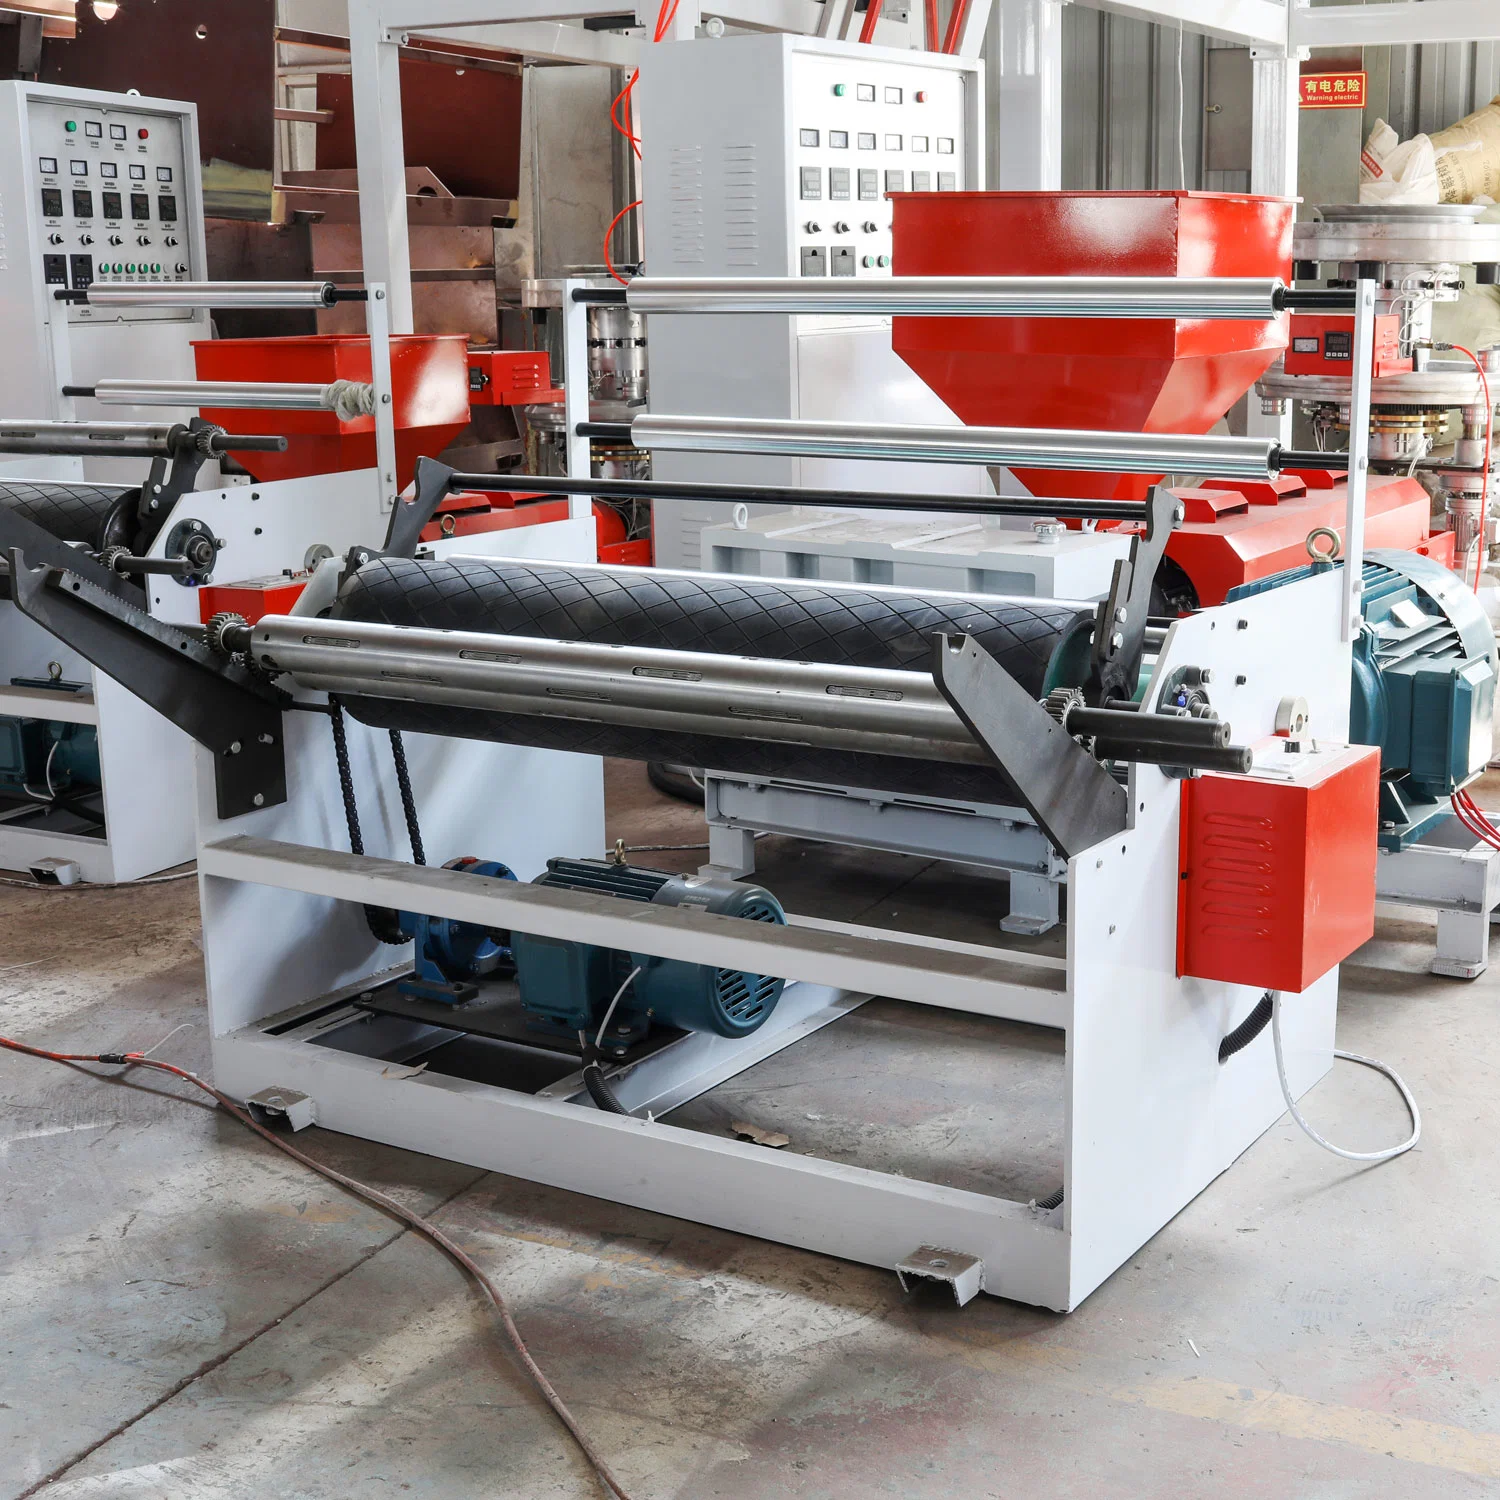 آلة لفيلم Hdpe لصنع أكياس البلاستيك في الصين